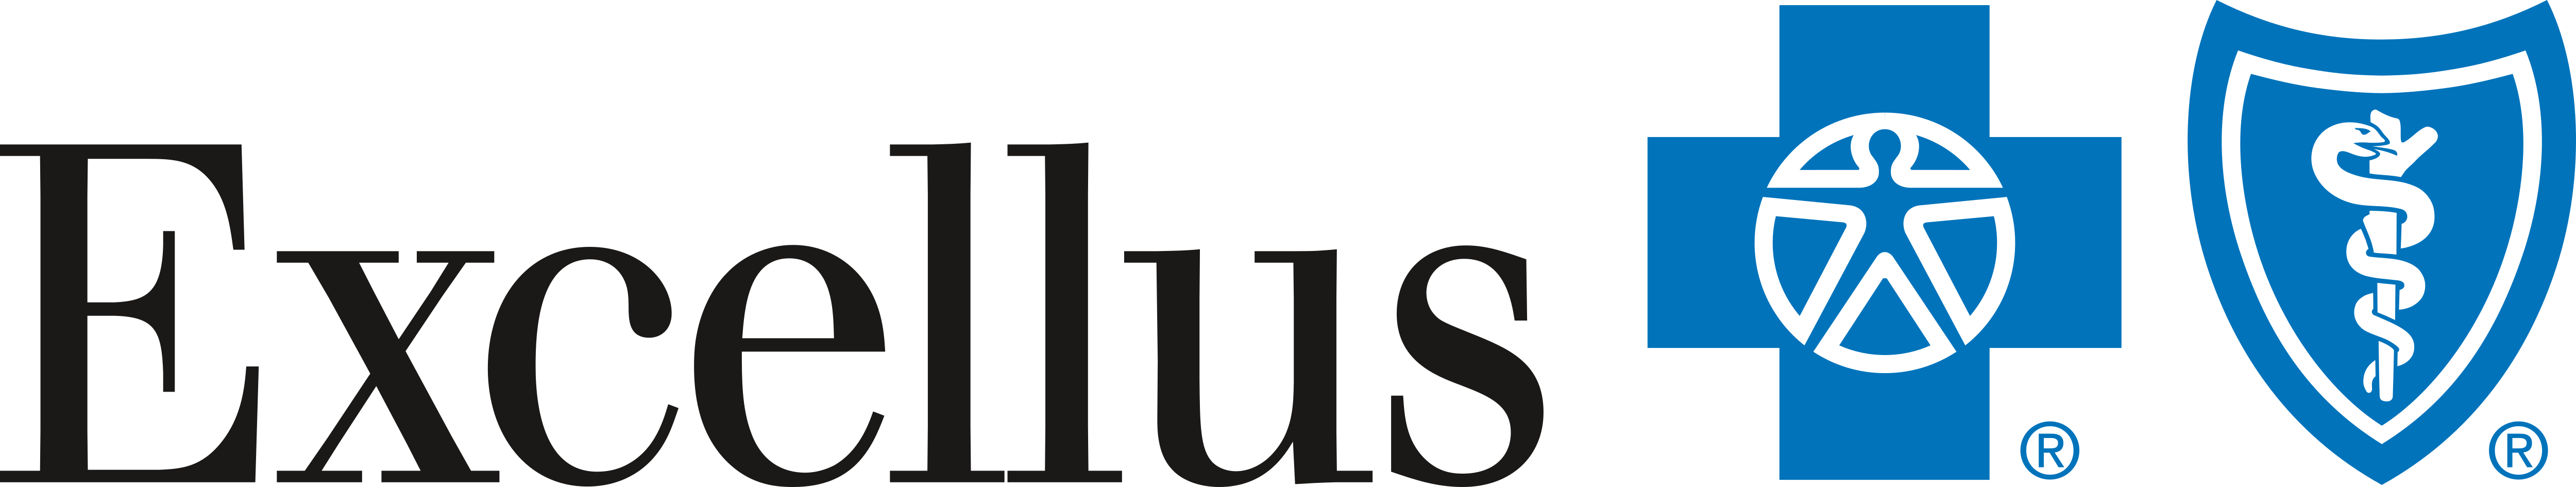 Excellus_Logo